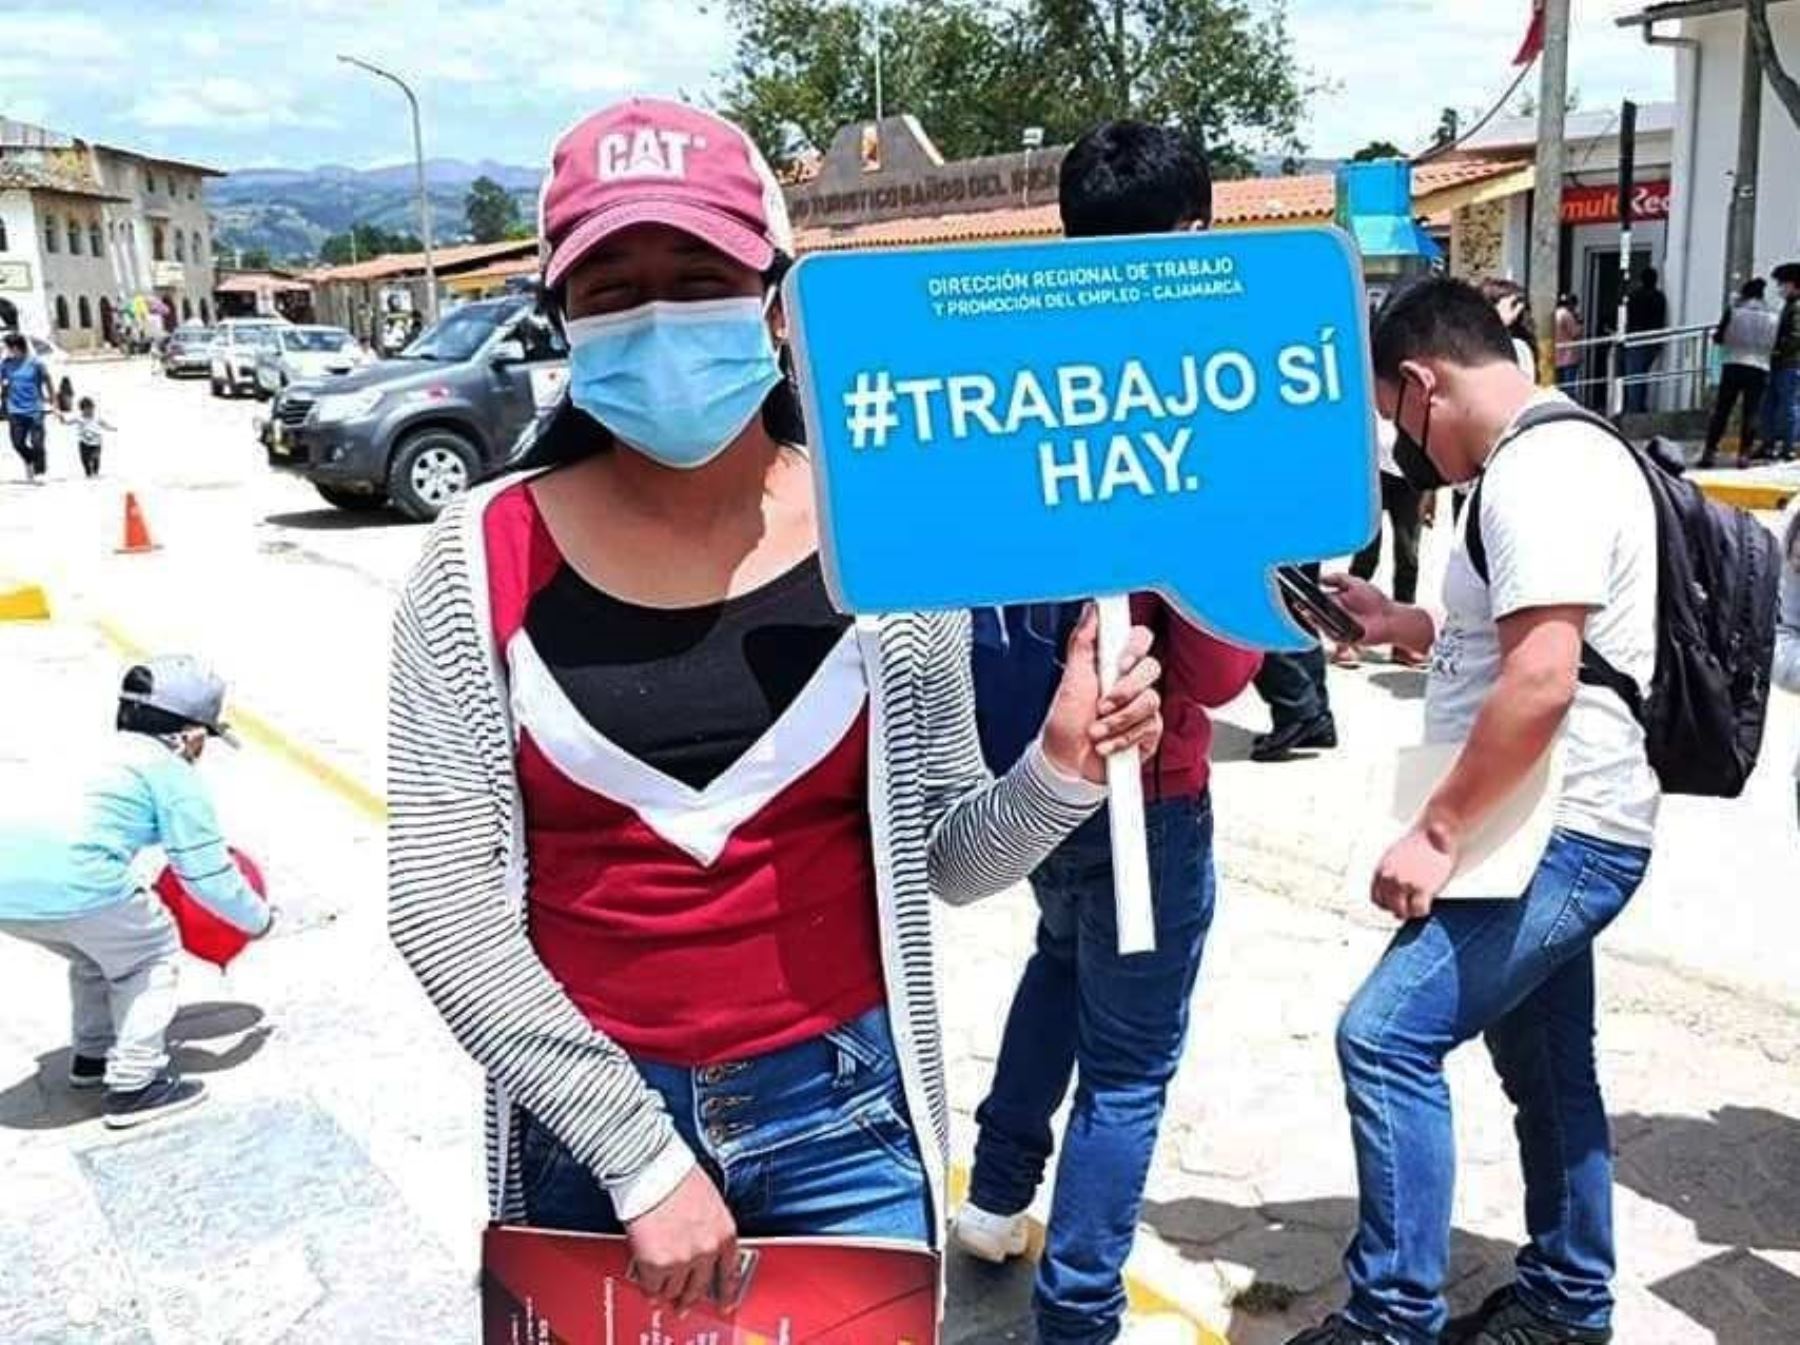 Gobierno Regional de Cajamarca organiza esta semana feria laboral "Chamba sí hay" donde se ofrecerán más de 300 empleos. Foto: ANDINA/difusión.